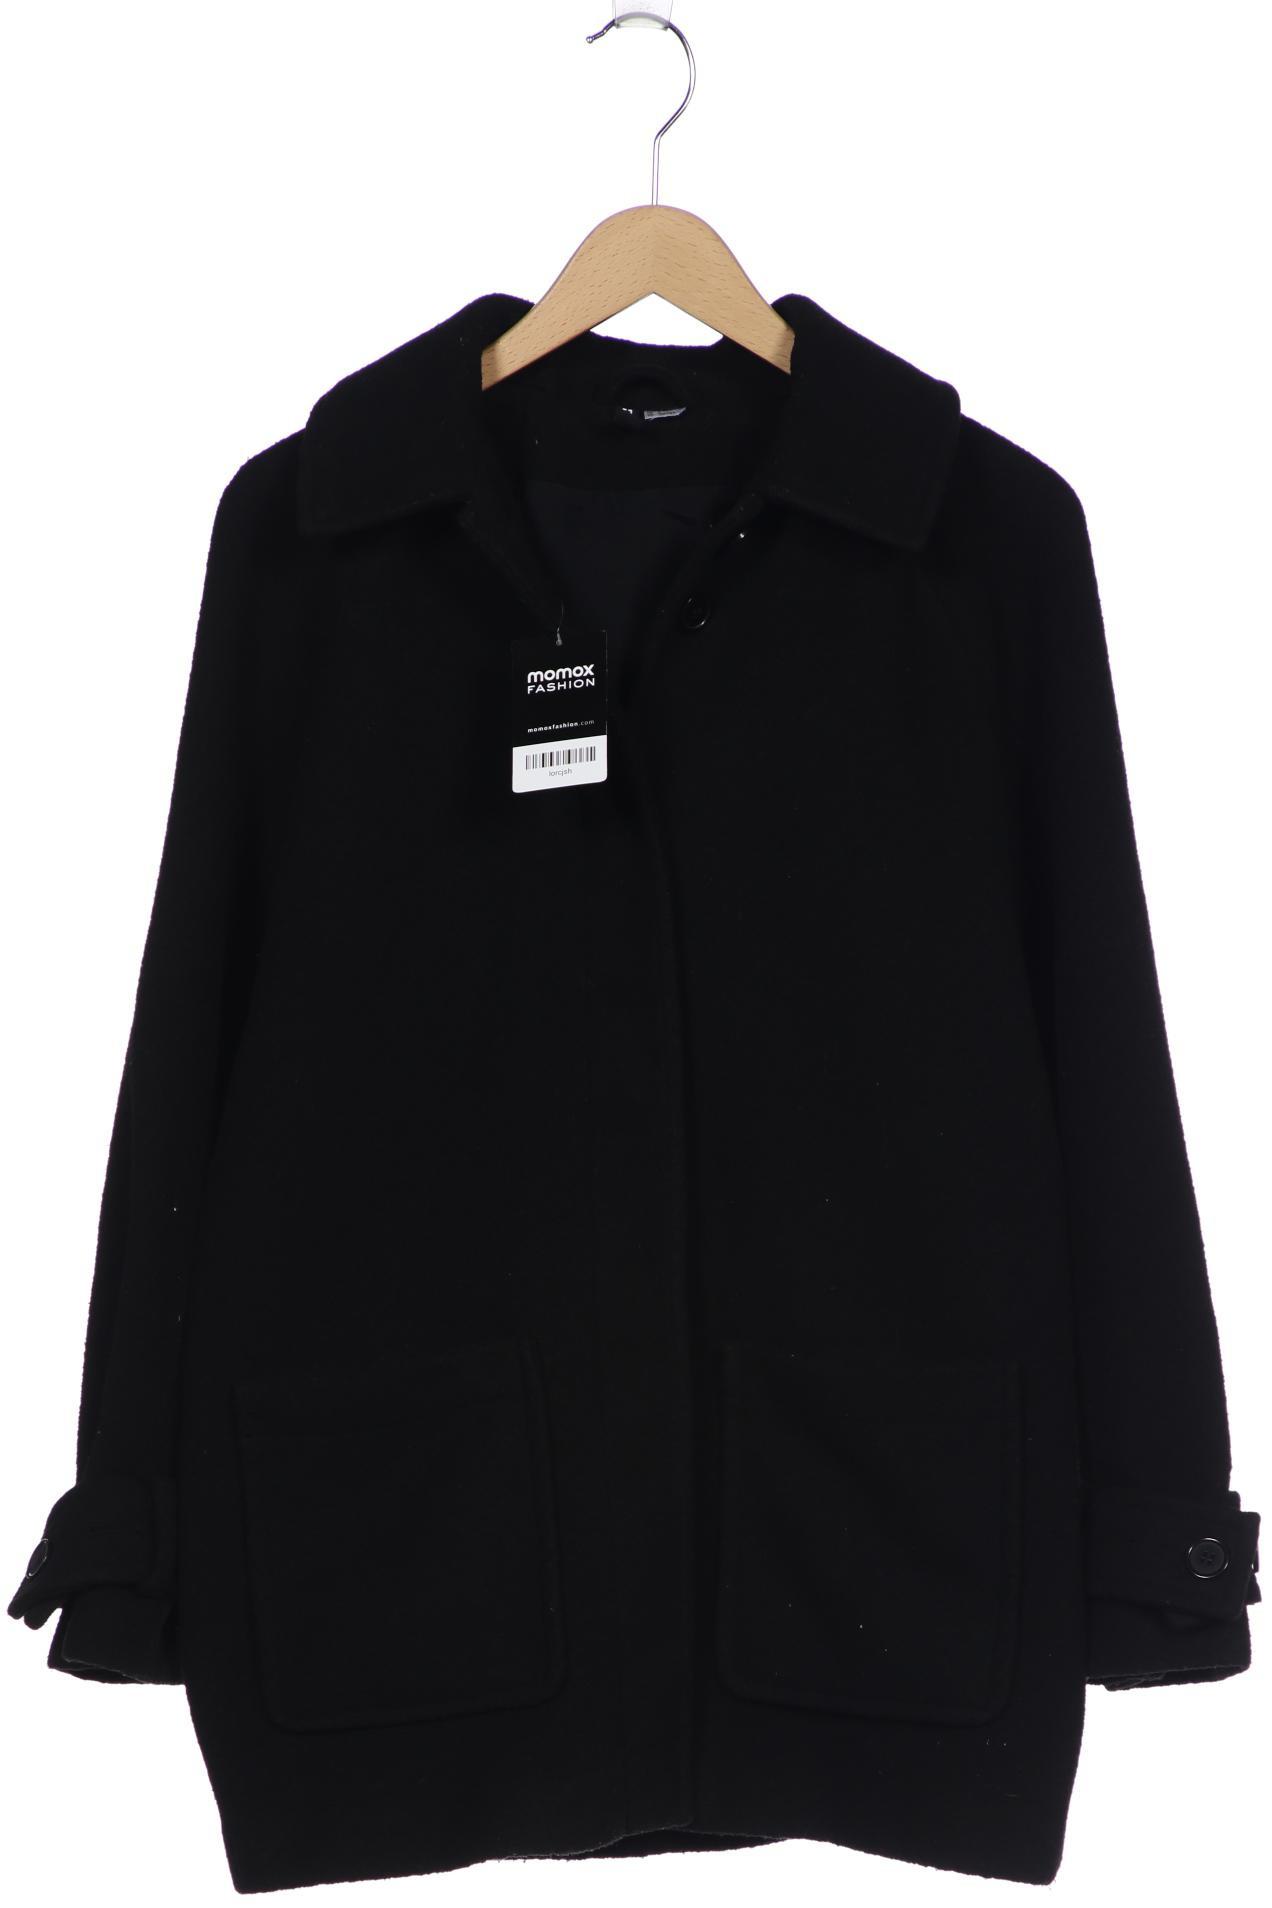 H&M Damen Mantel, schwarz von H&M